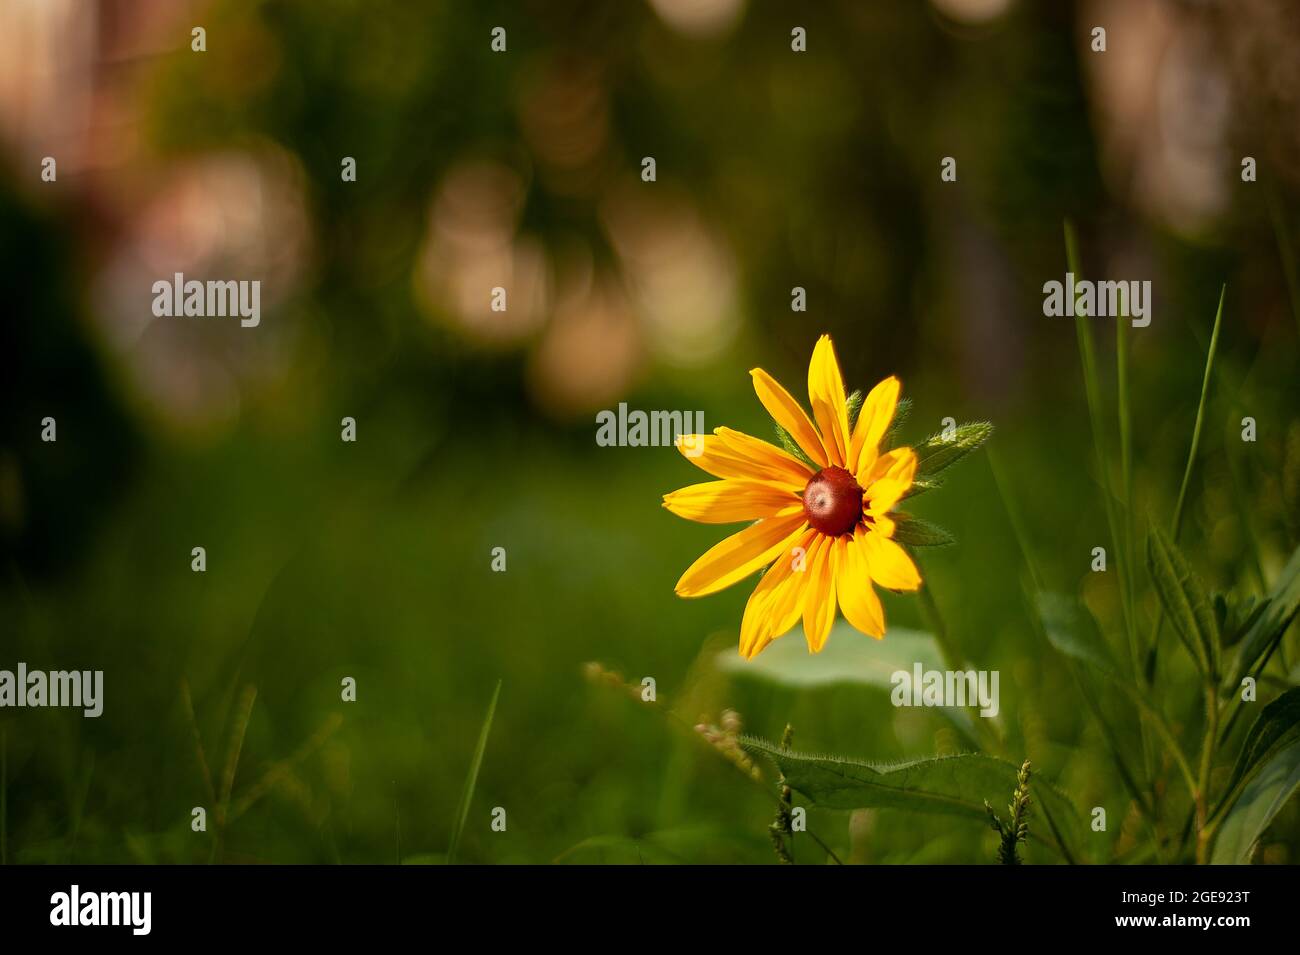 Un fiore hirta Susan Rudbeckia dagli occhi neri con profondità di campo poco profonda, vista in primo piano di un fiore giallo daisy estivo dalla famiglia di girasoli con il verde Foto Stock